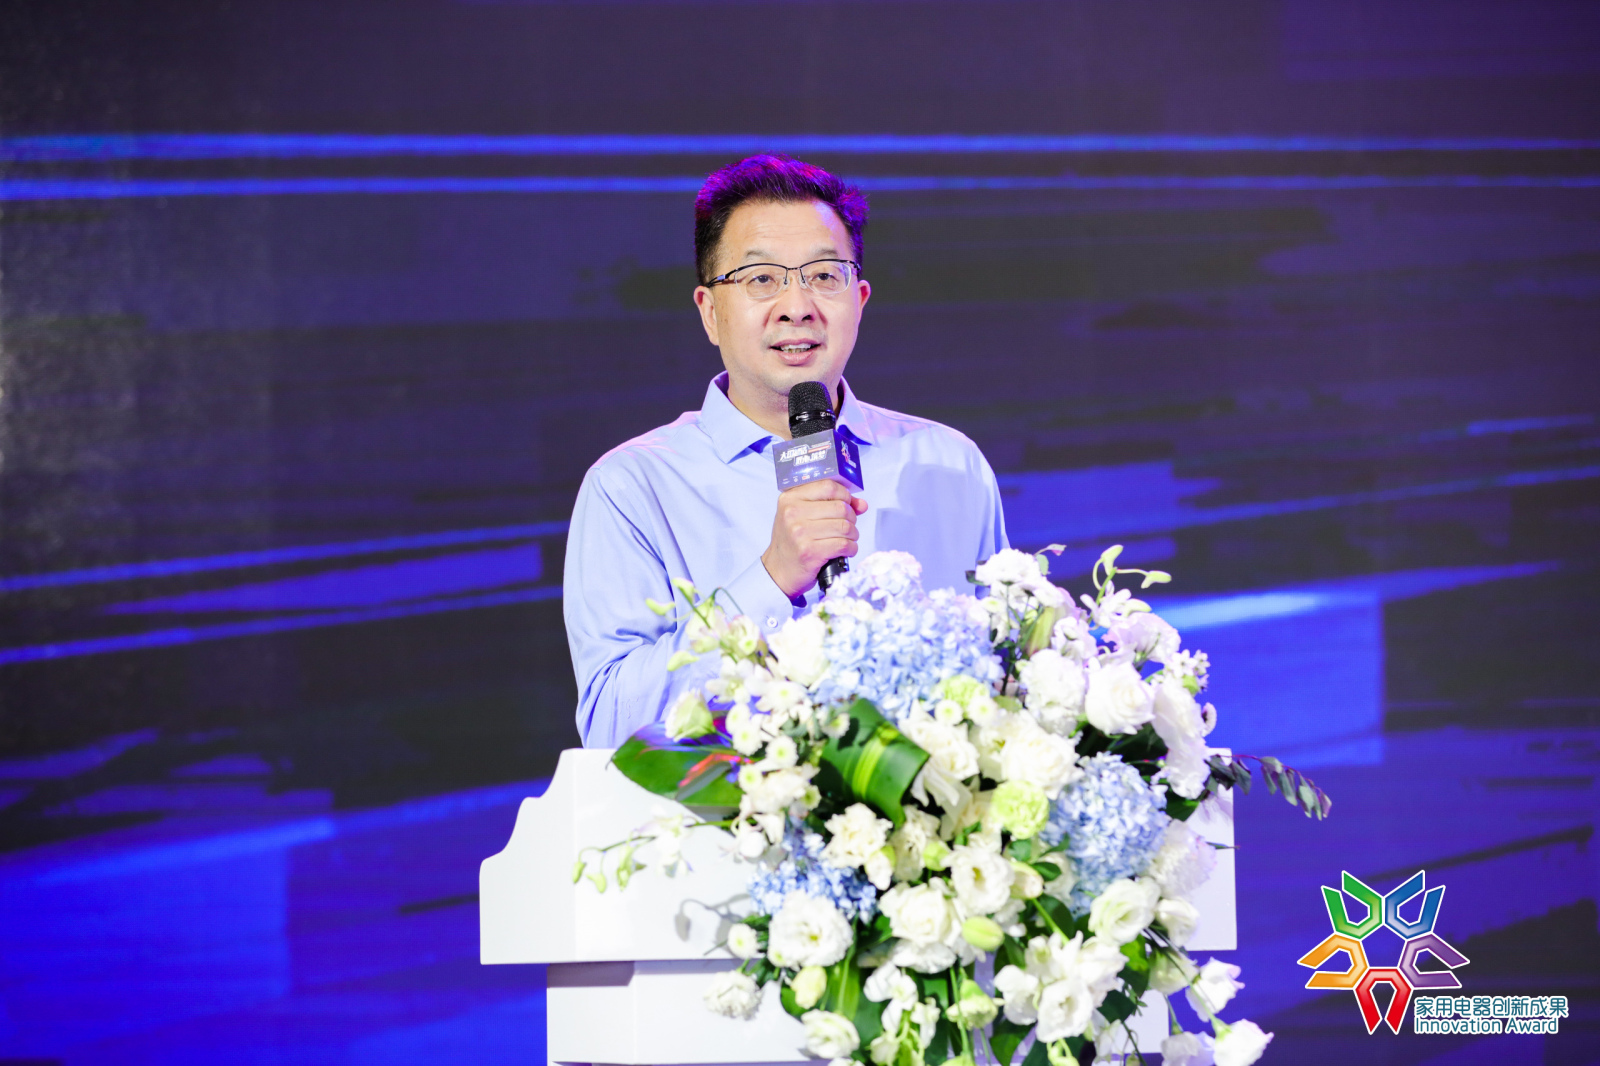 《2020-2021年度中国家用电器行业品牌评价结果》在北京发布 智能公会